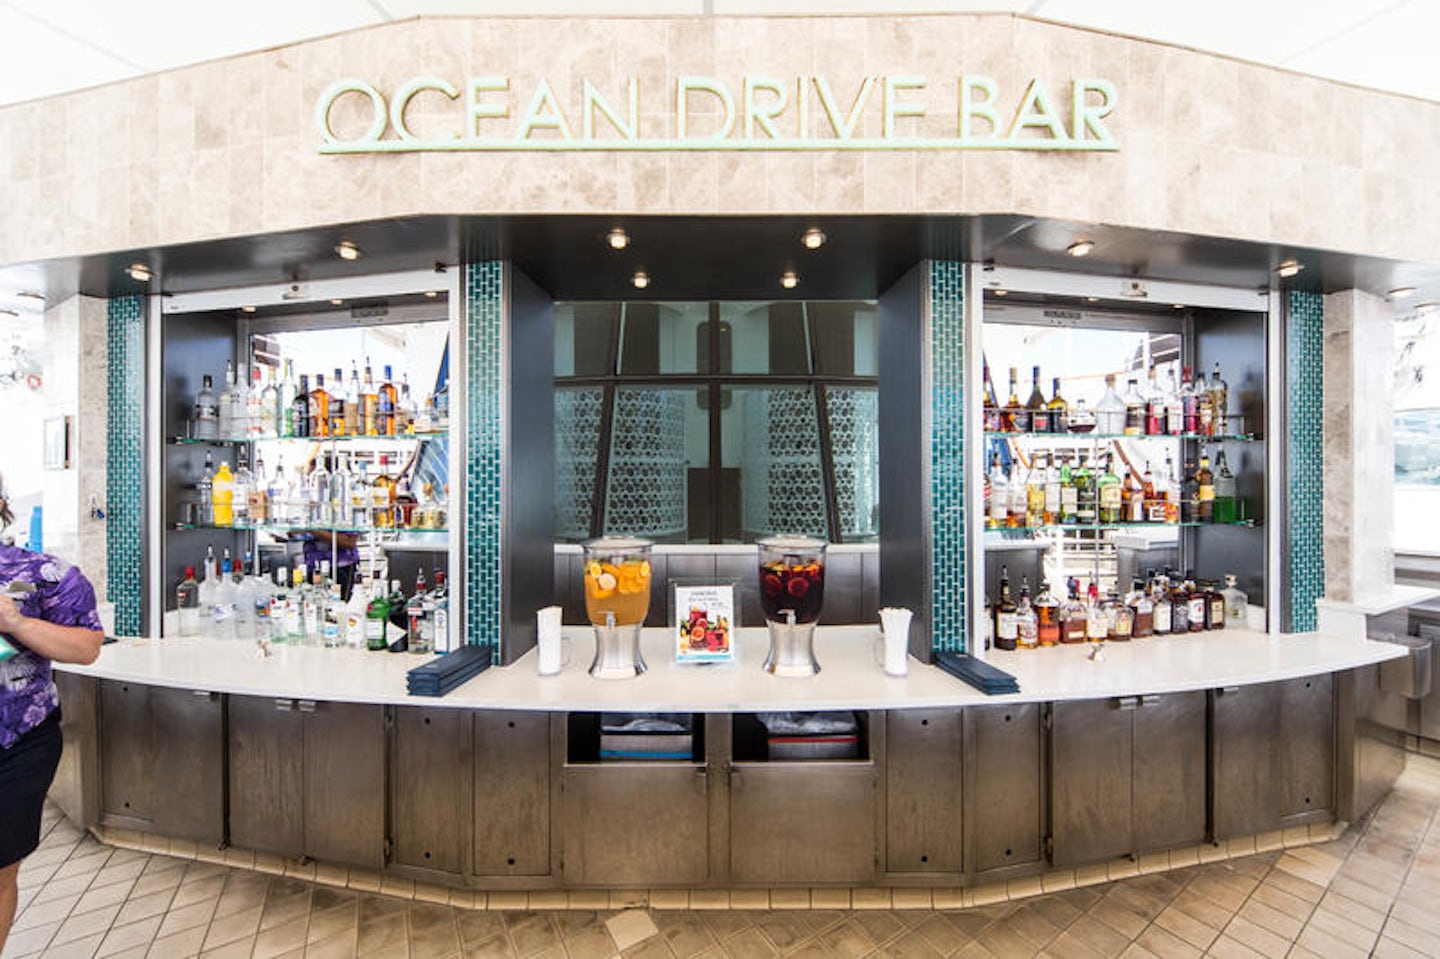 Ocean Drive Bar on Pride of America